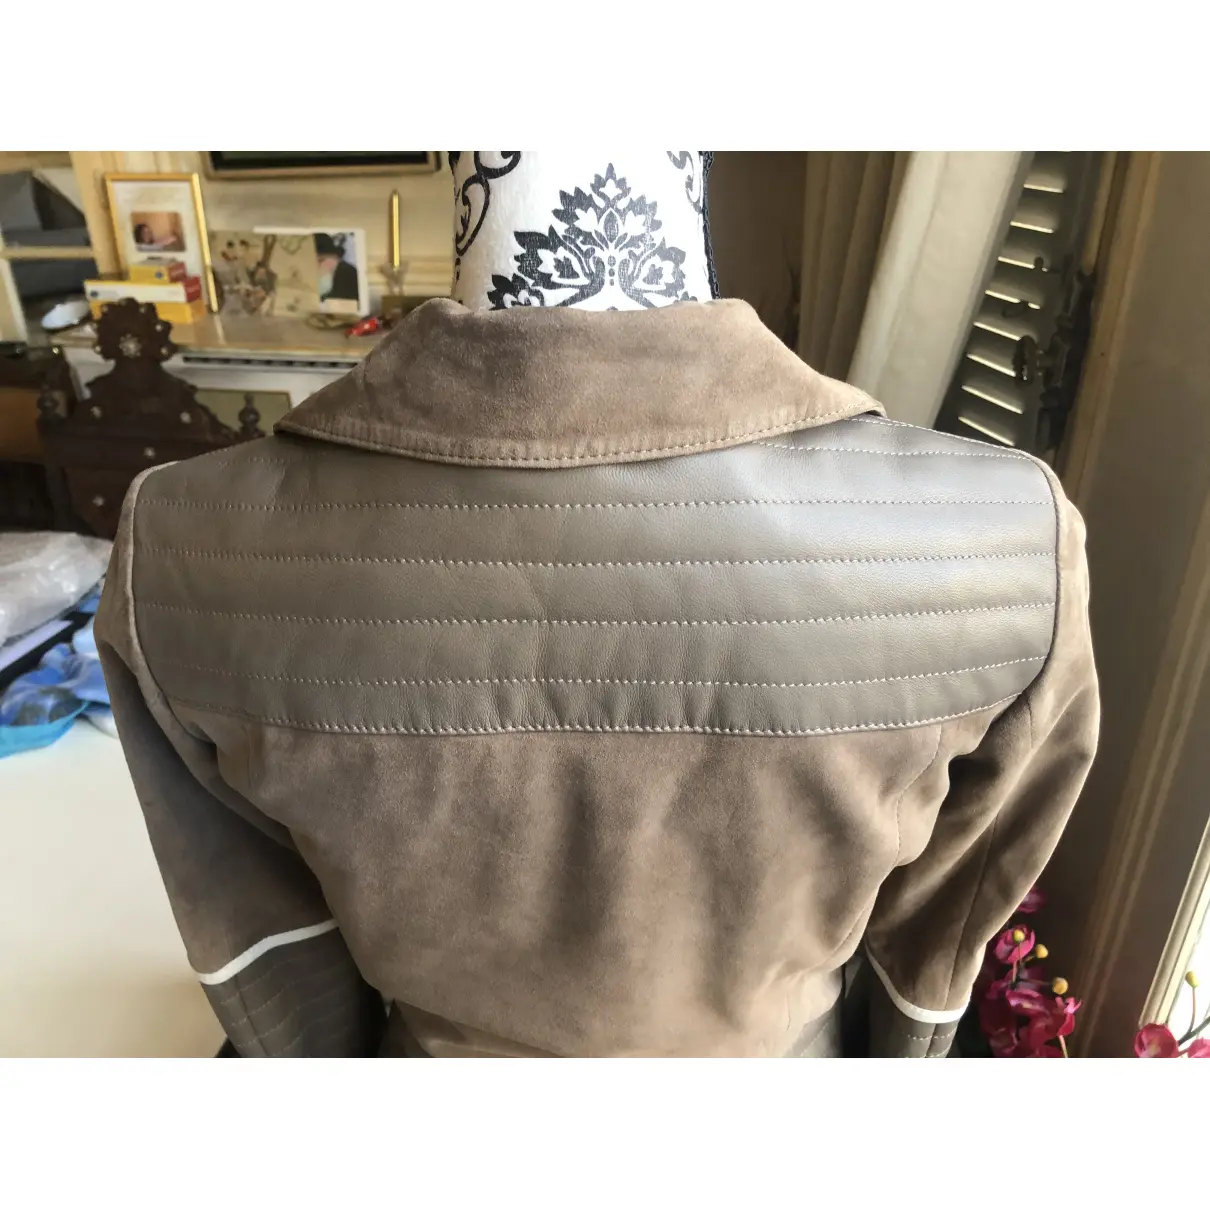 Leather jacket Ventcouvert